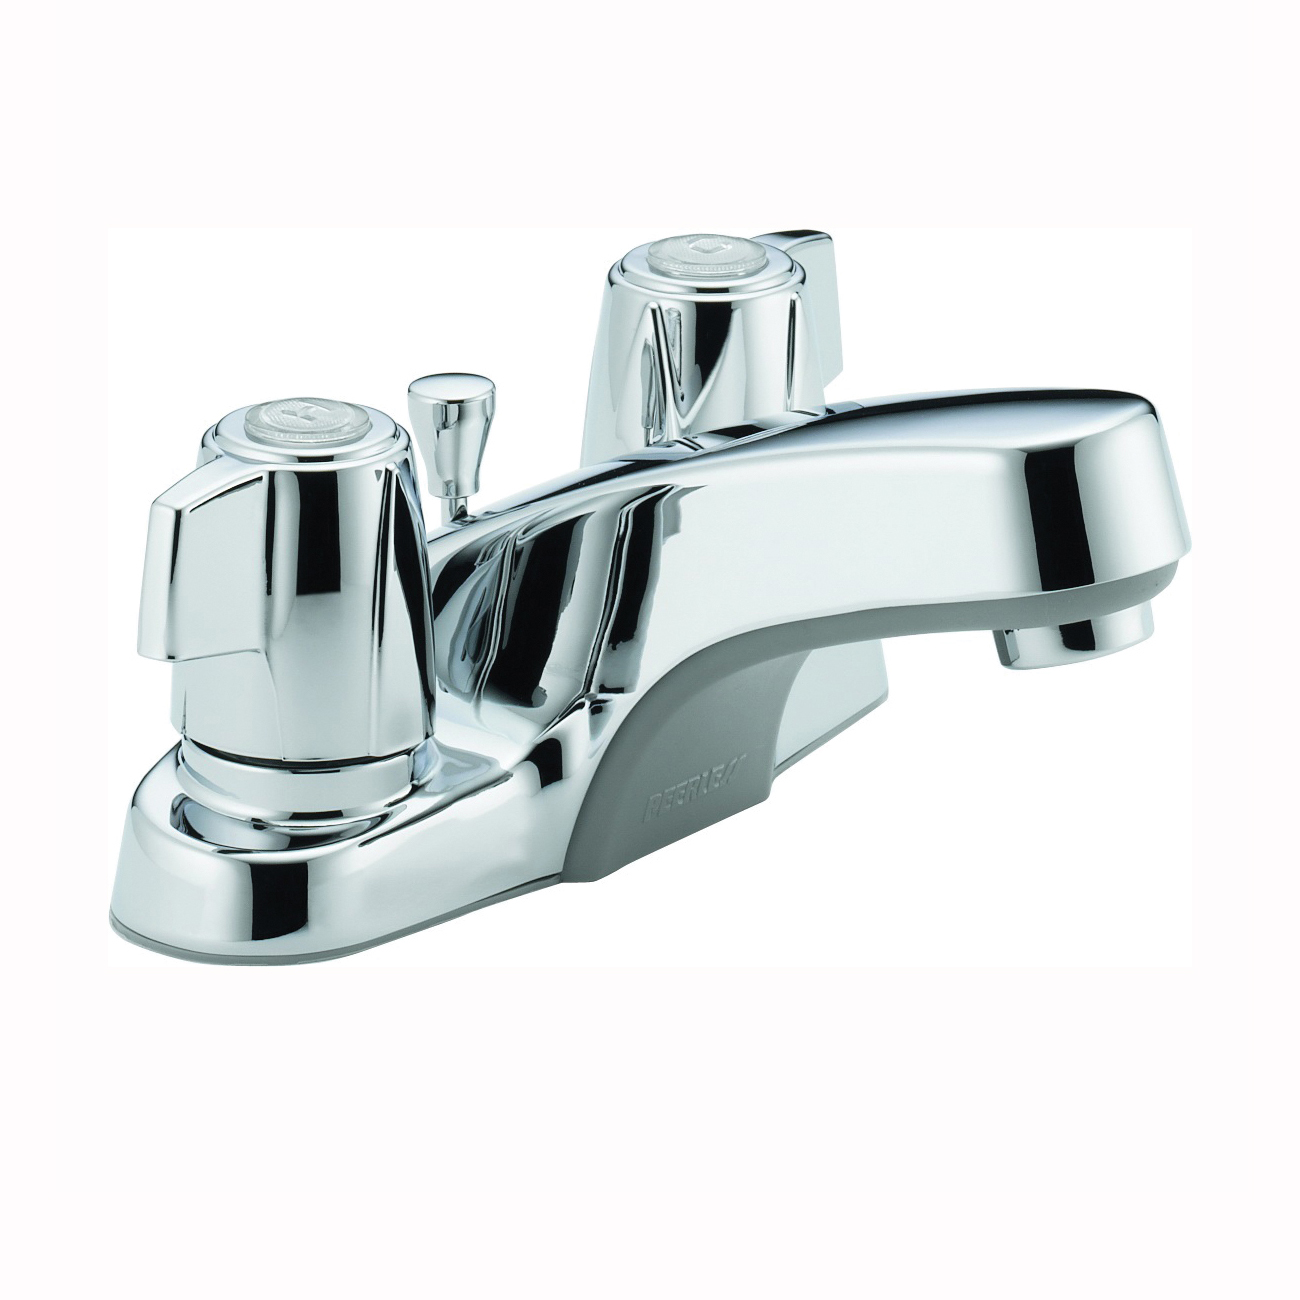 P246LF Bathroom Faucet, 1.2 gpm, 2-Faucet Handle, Metal, Chrome Plated, Lever Handle, Standard Spout